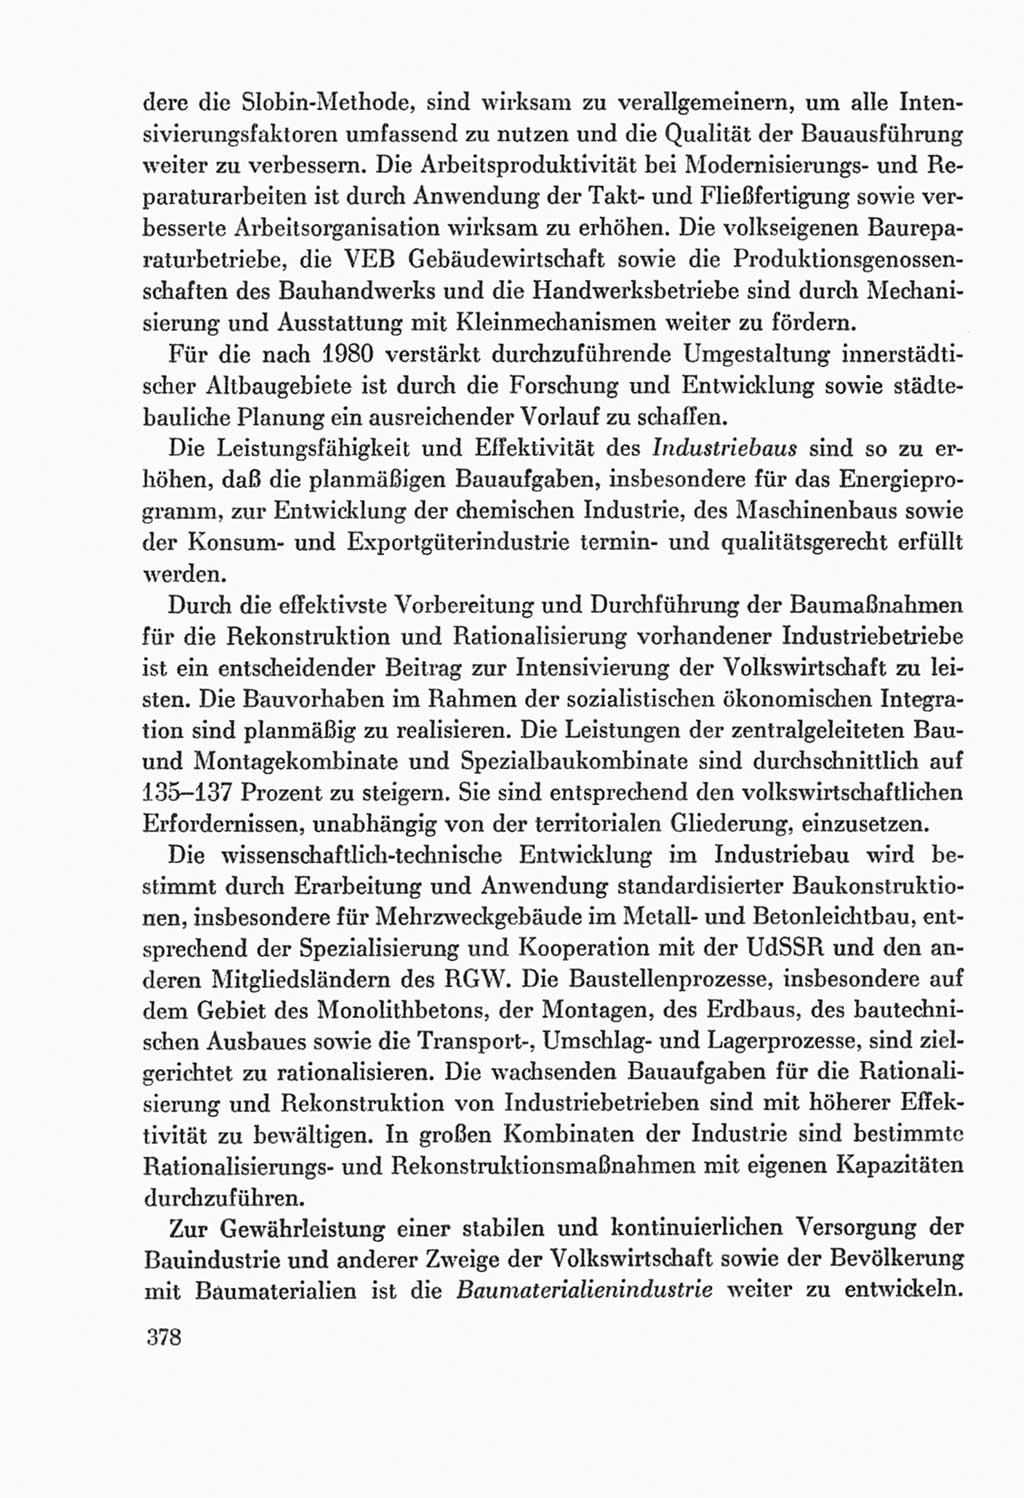 Protokoll der Verhandlungen des Ⅸ. Parteitages der Sozialistischen Einheitspartei Deutschlands (SED) [Deutsche Demokratische Republik (DDR)] 1976, Band 2, Seite 378 (Prot. Verh. Ⅸ. PT SED DDR 1976, Bd. 2, S. 378)